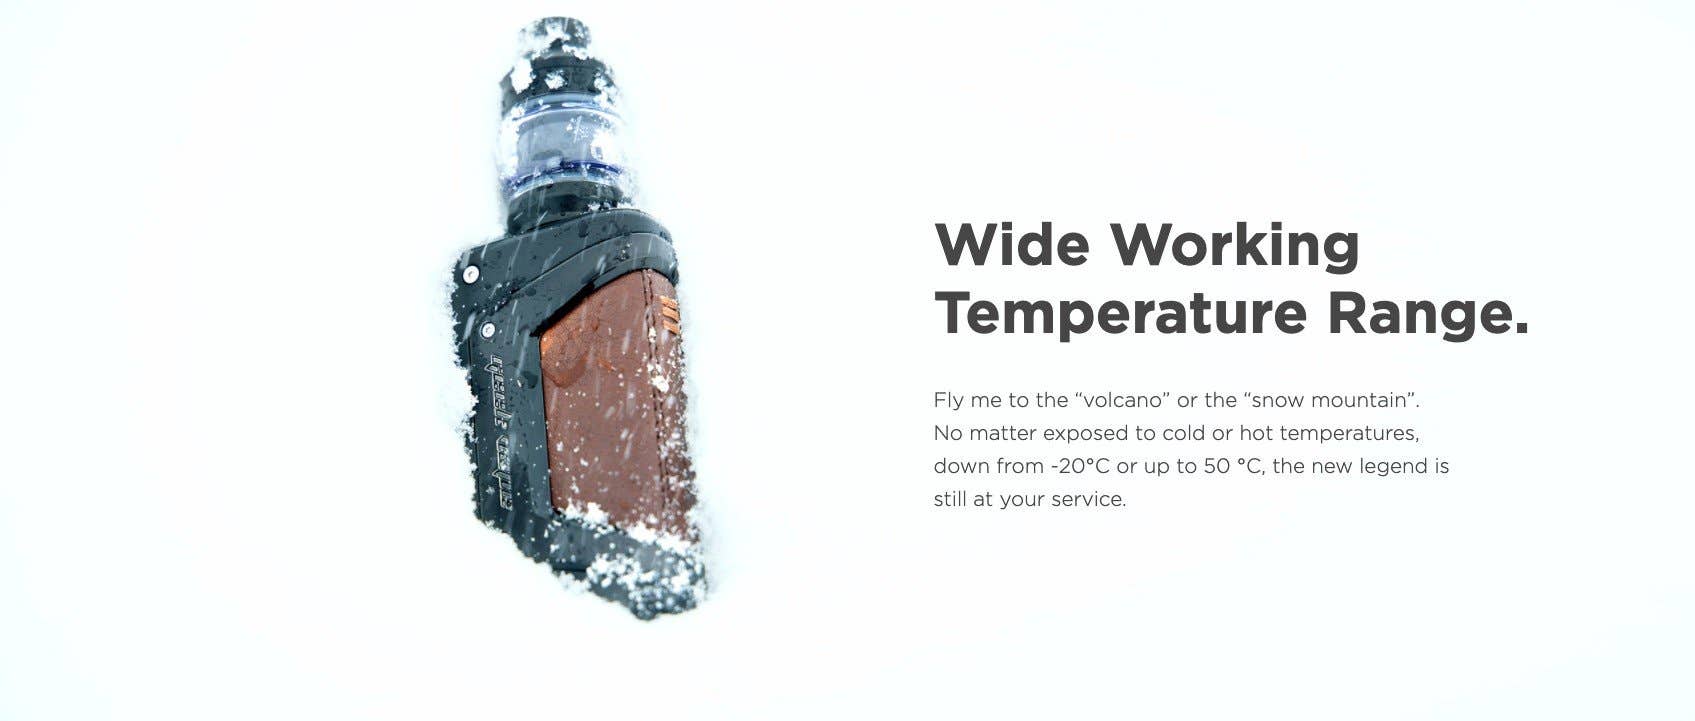 Wide working temperature range